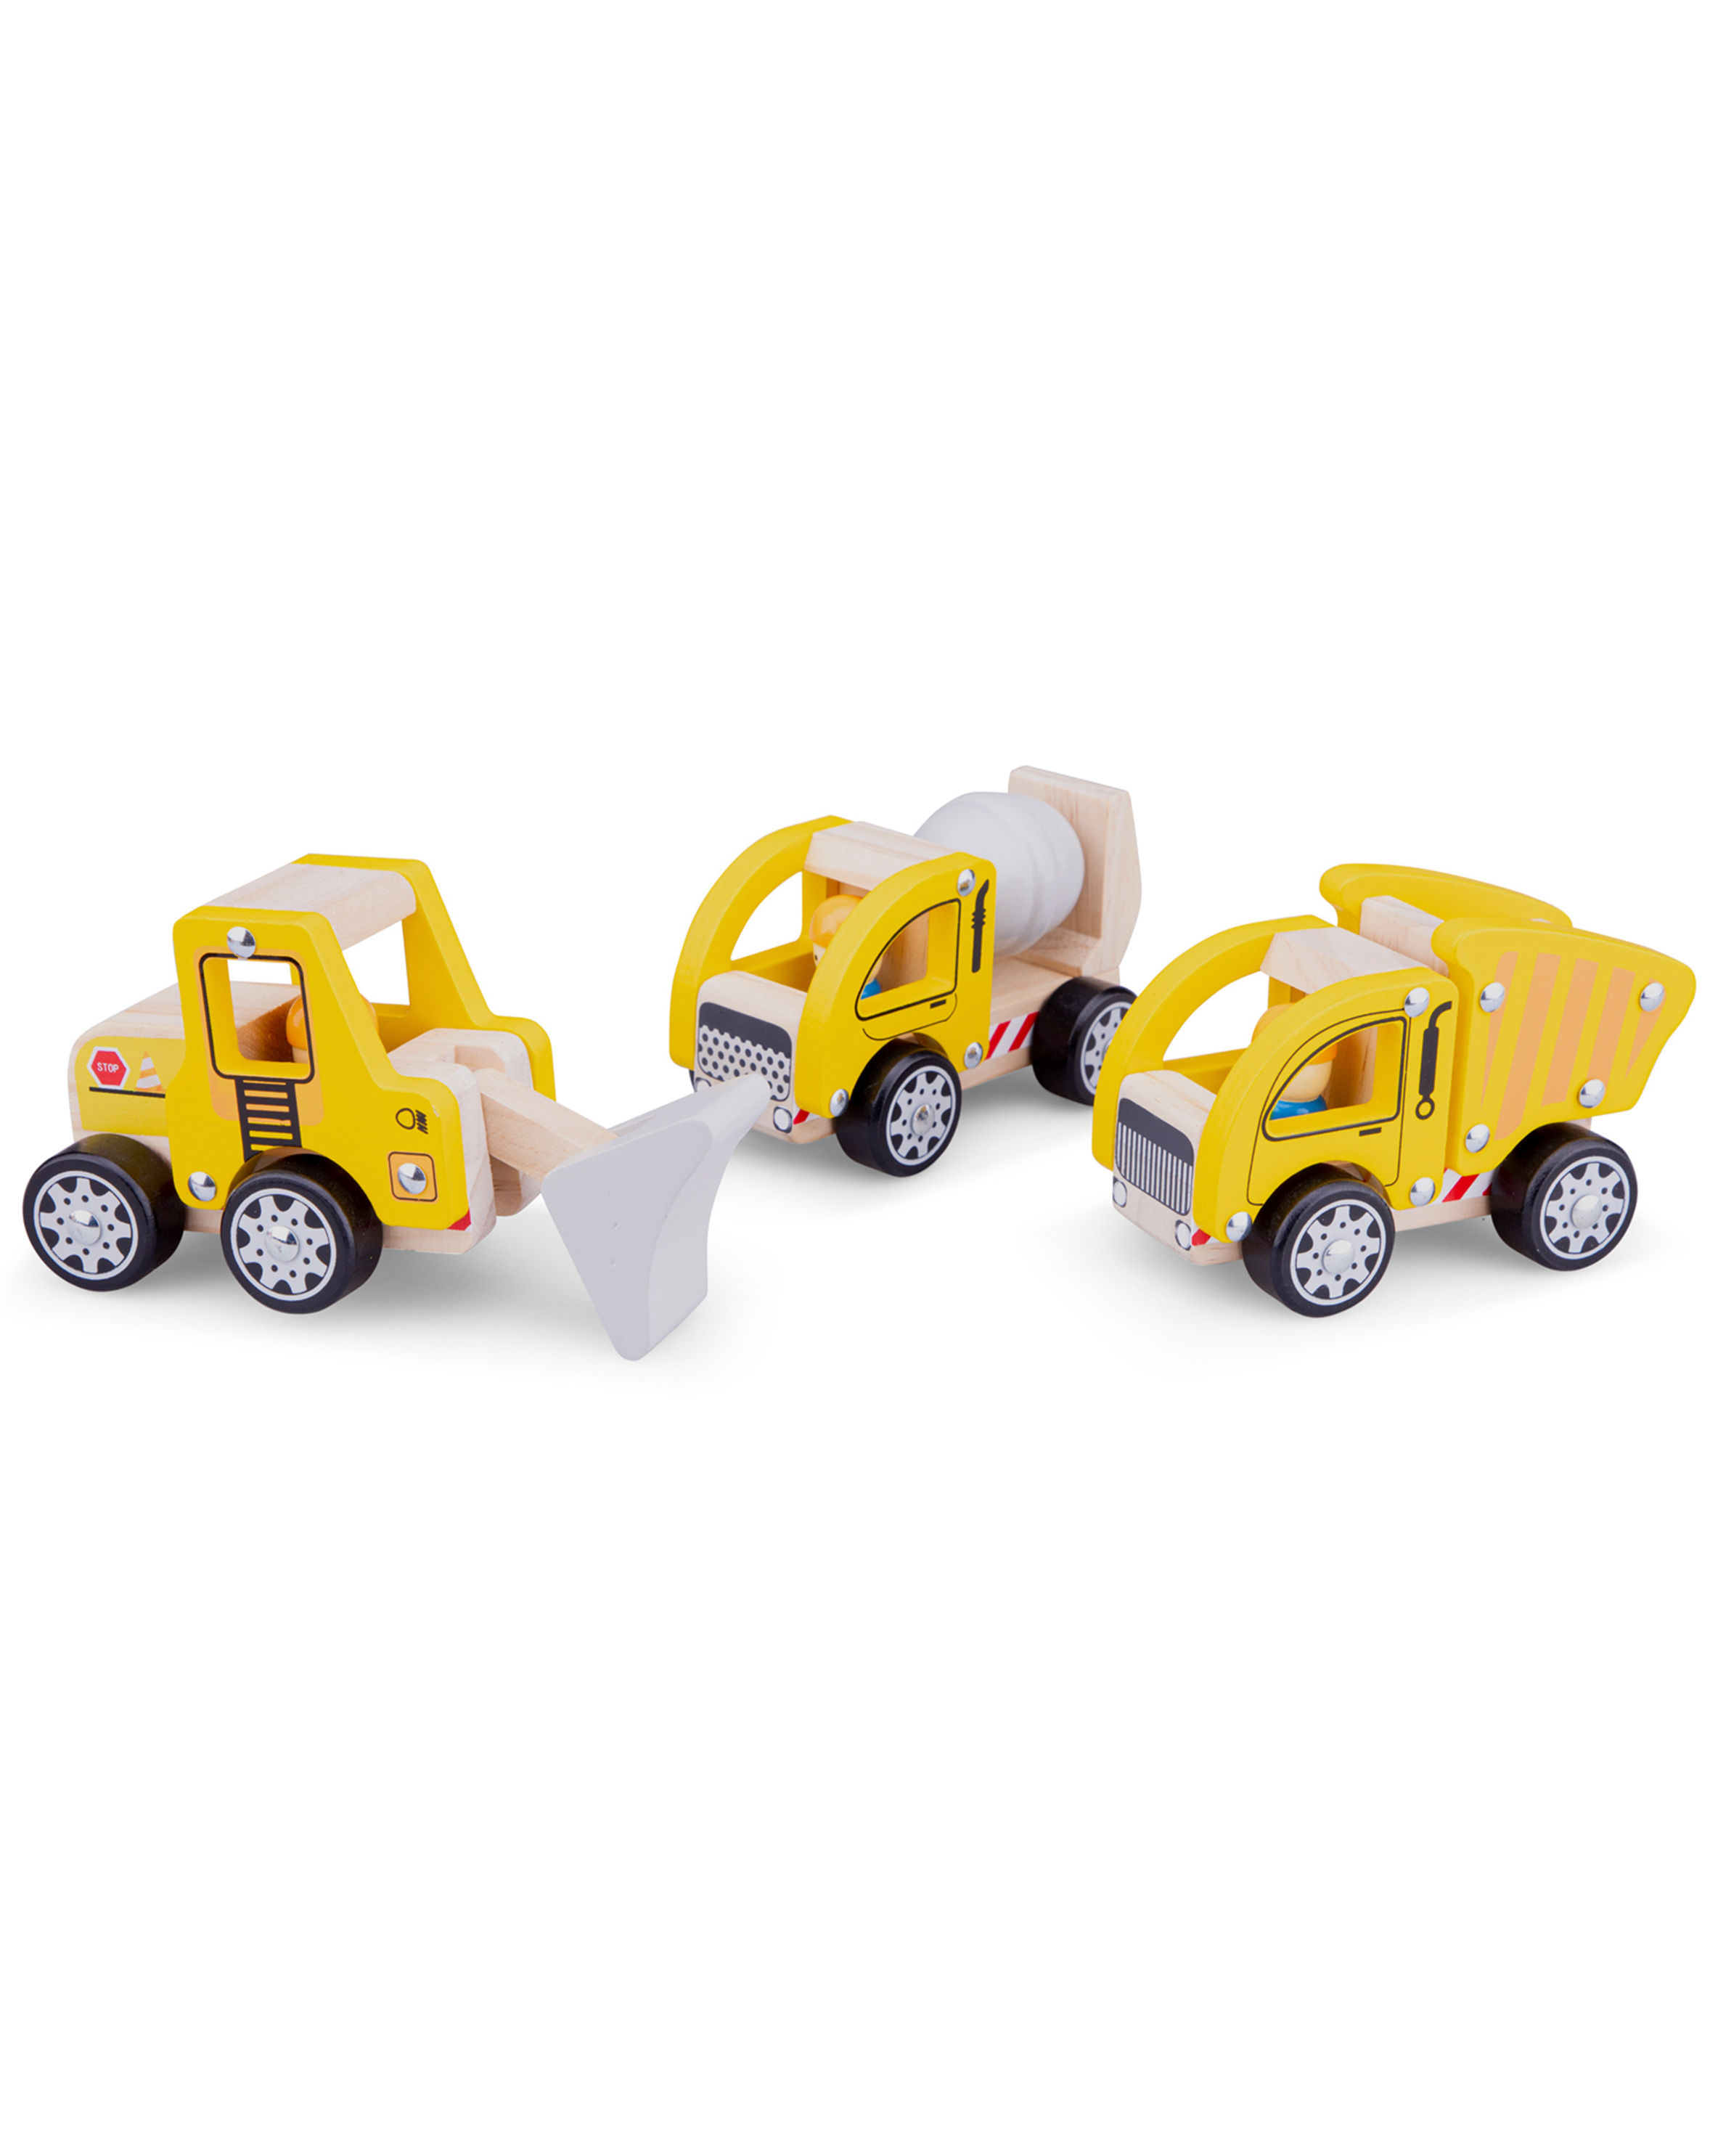 Spielzeugautos BAUFAHRZEUGE 3-teilig aus Holz in gelb kaufen